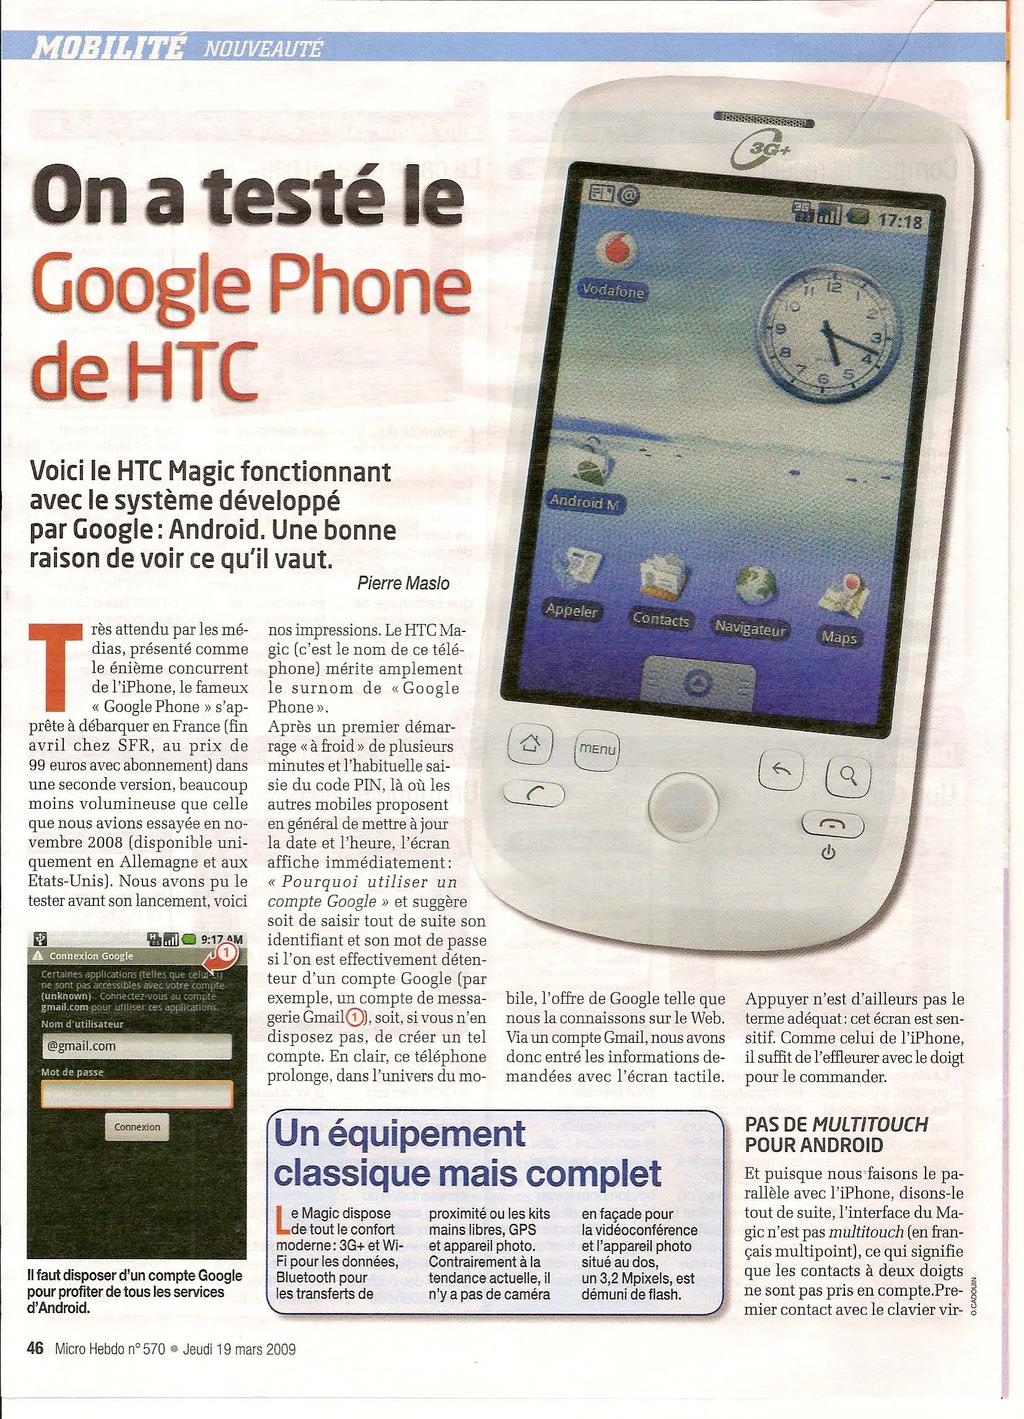 Go d n Voici le HTC Magicfonctionnant avec le système développé par Google: Android. Une bonne raison de voir ce qu'il vaut.